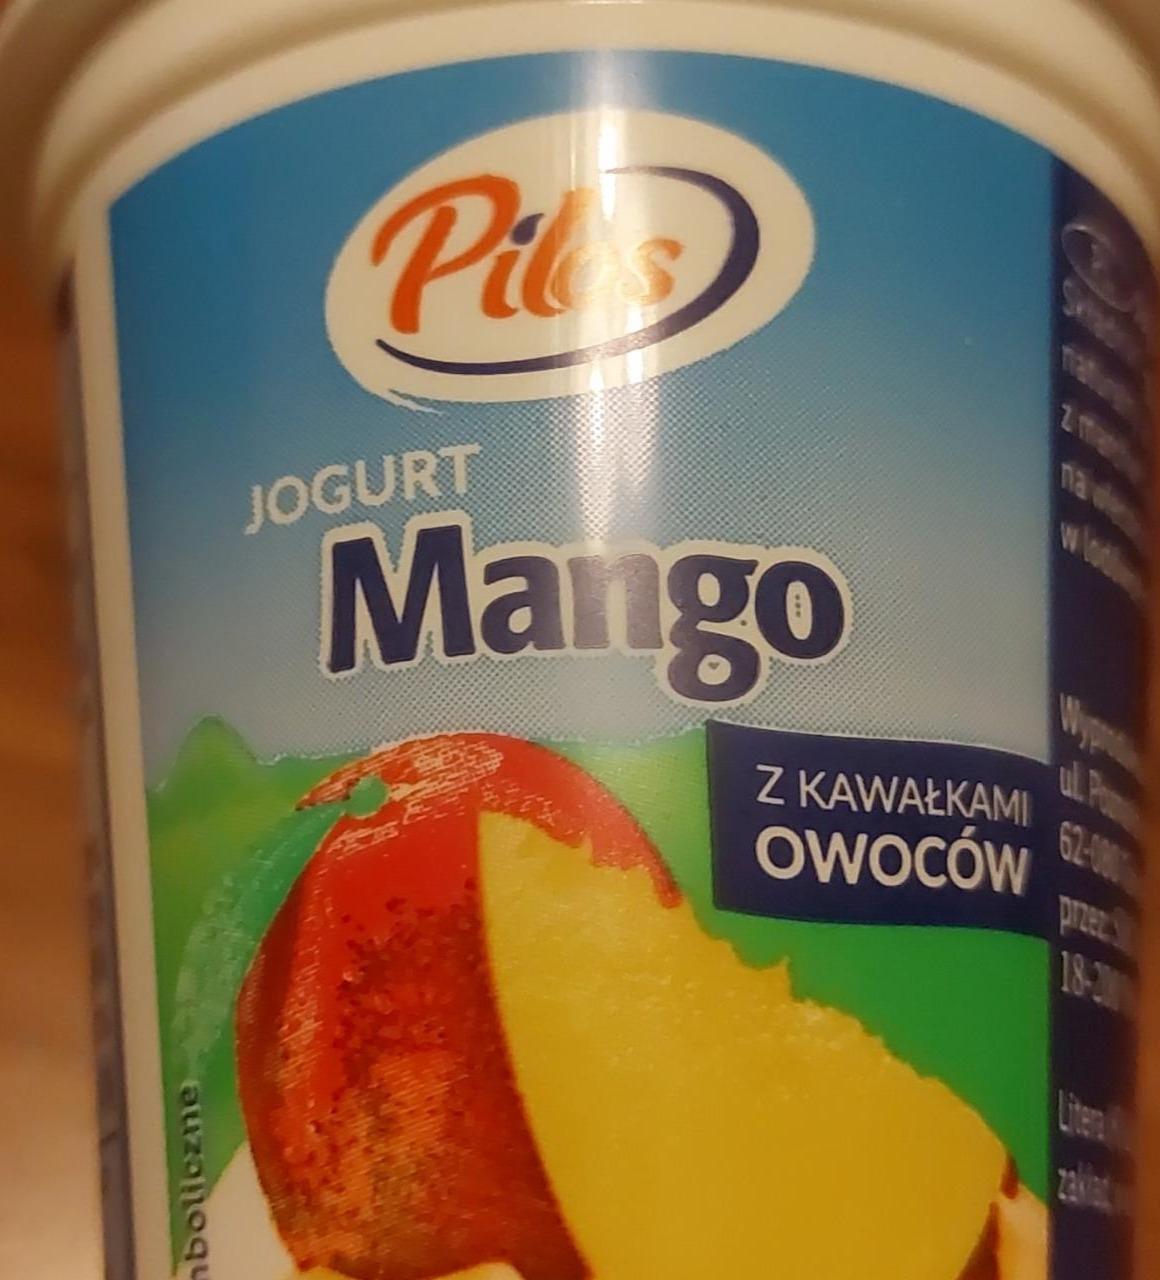 Zdjęcia - jogurt mango z kawałkami owoców Pilos